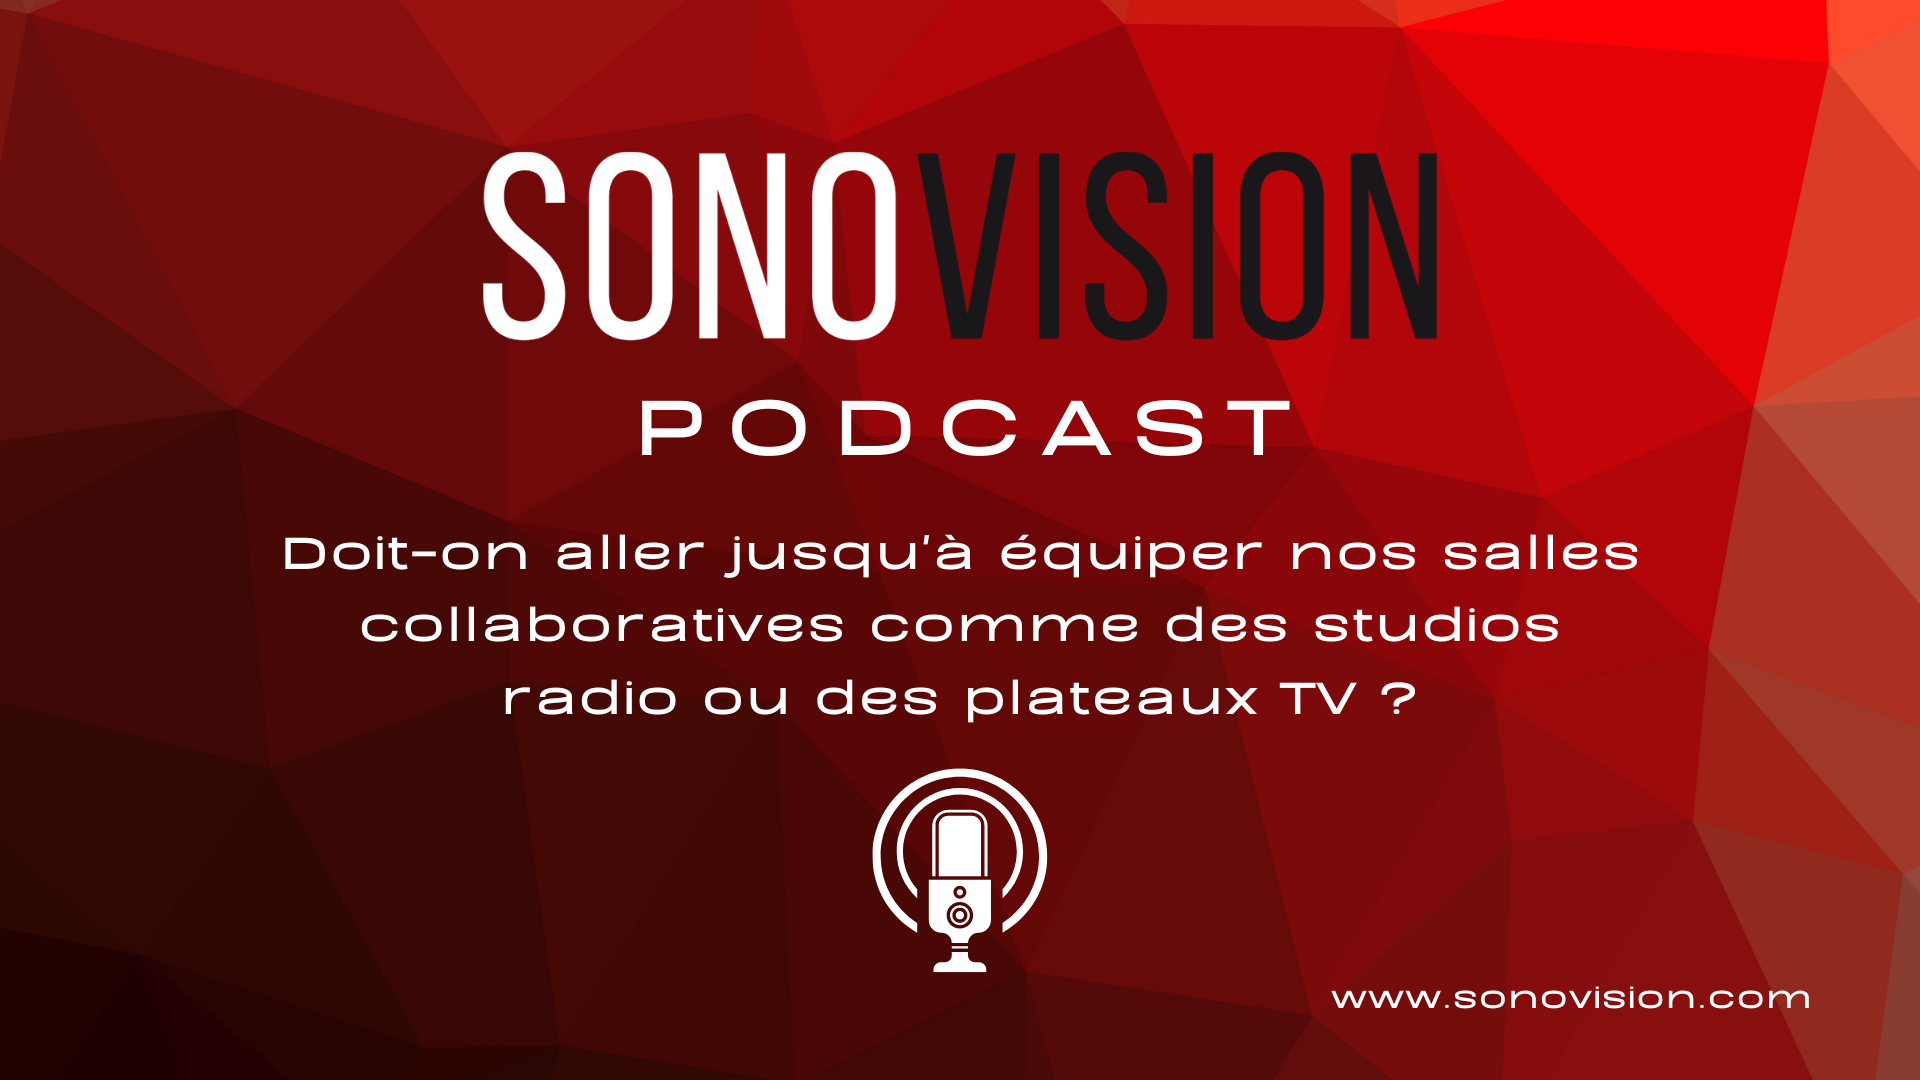 hånd tweet Aflede Sonovision - Doit-on aller équiper les salles collaboratives comme des  studios radio ou des plateaux TV ?